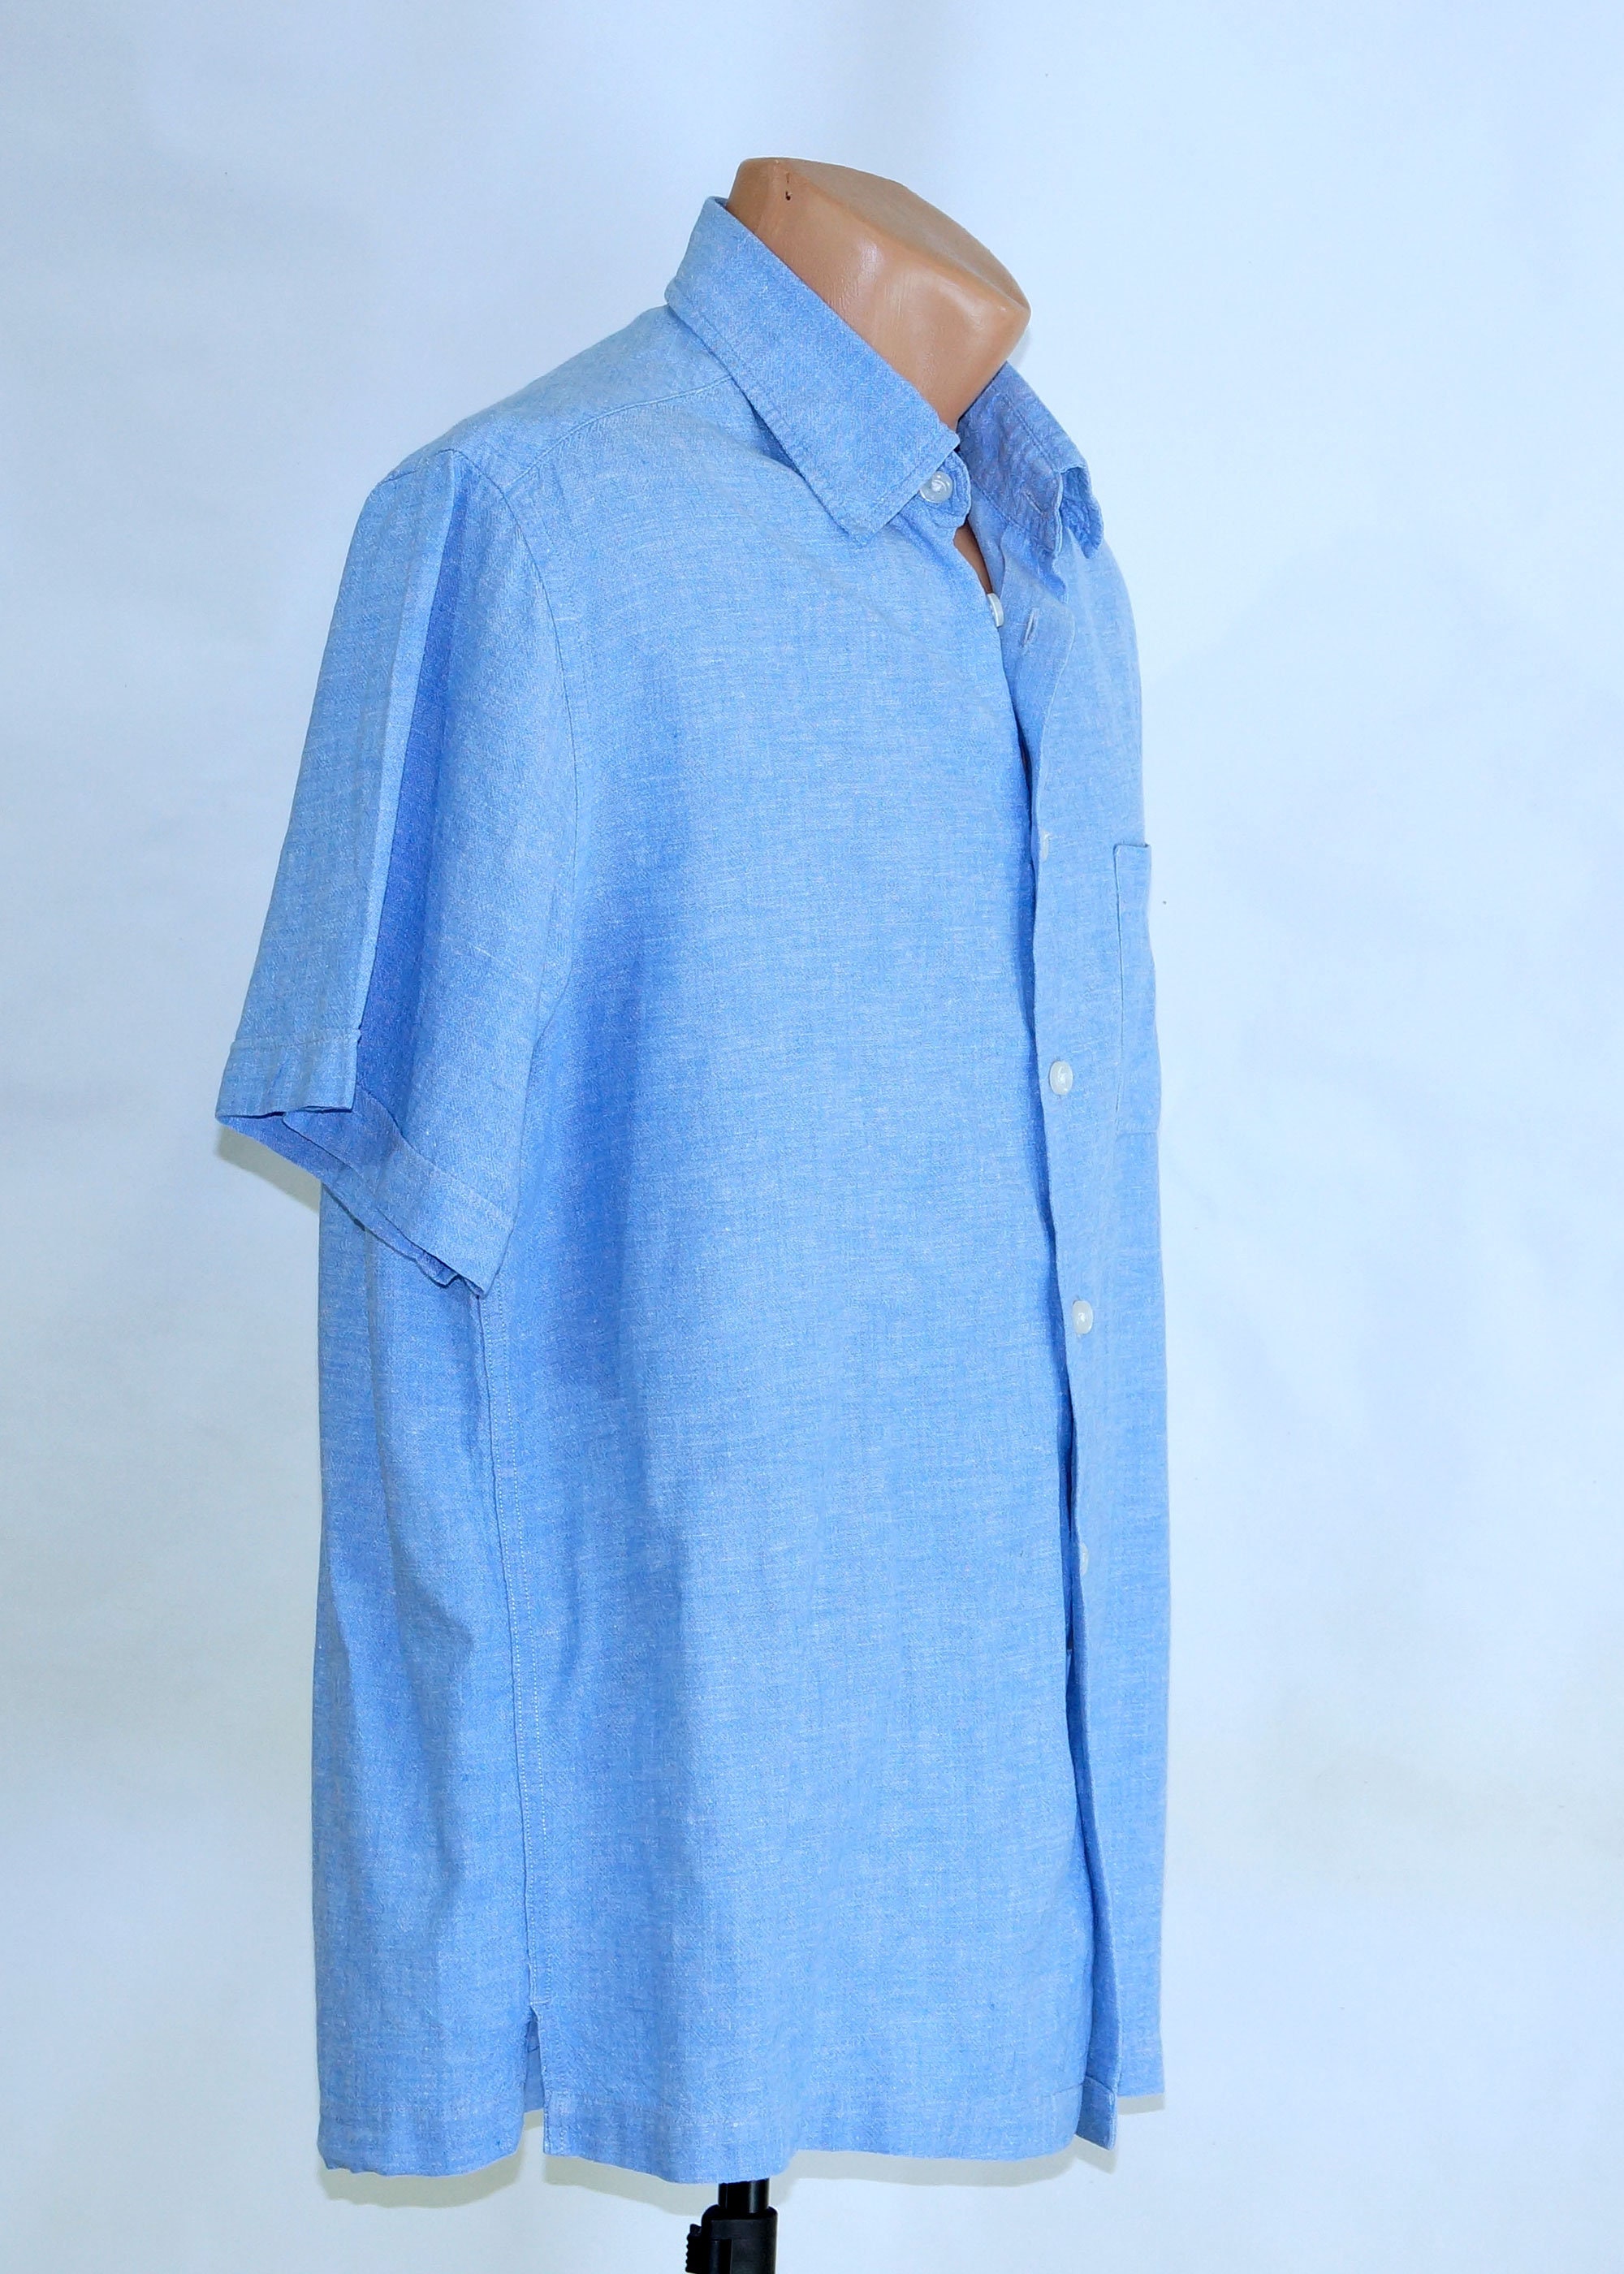 Linen men's shirt, short sleeve button down men's shirt, blue linen ...